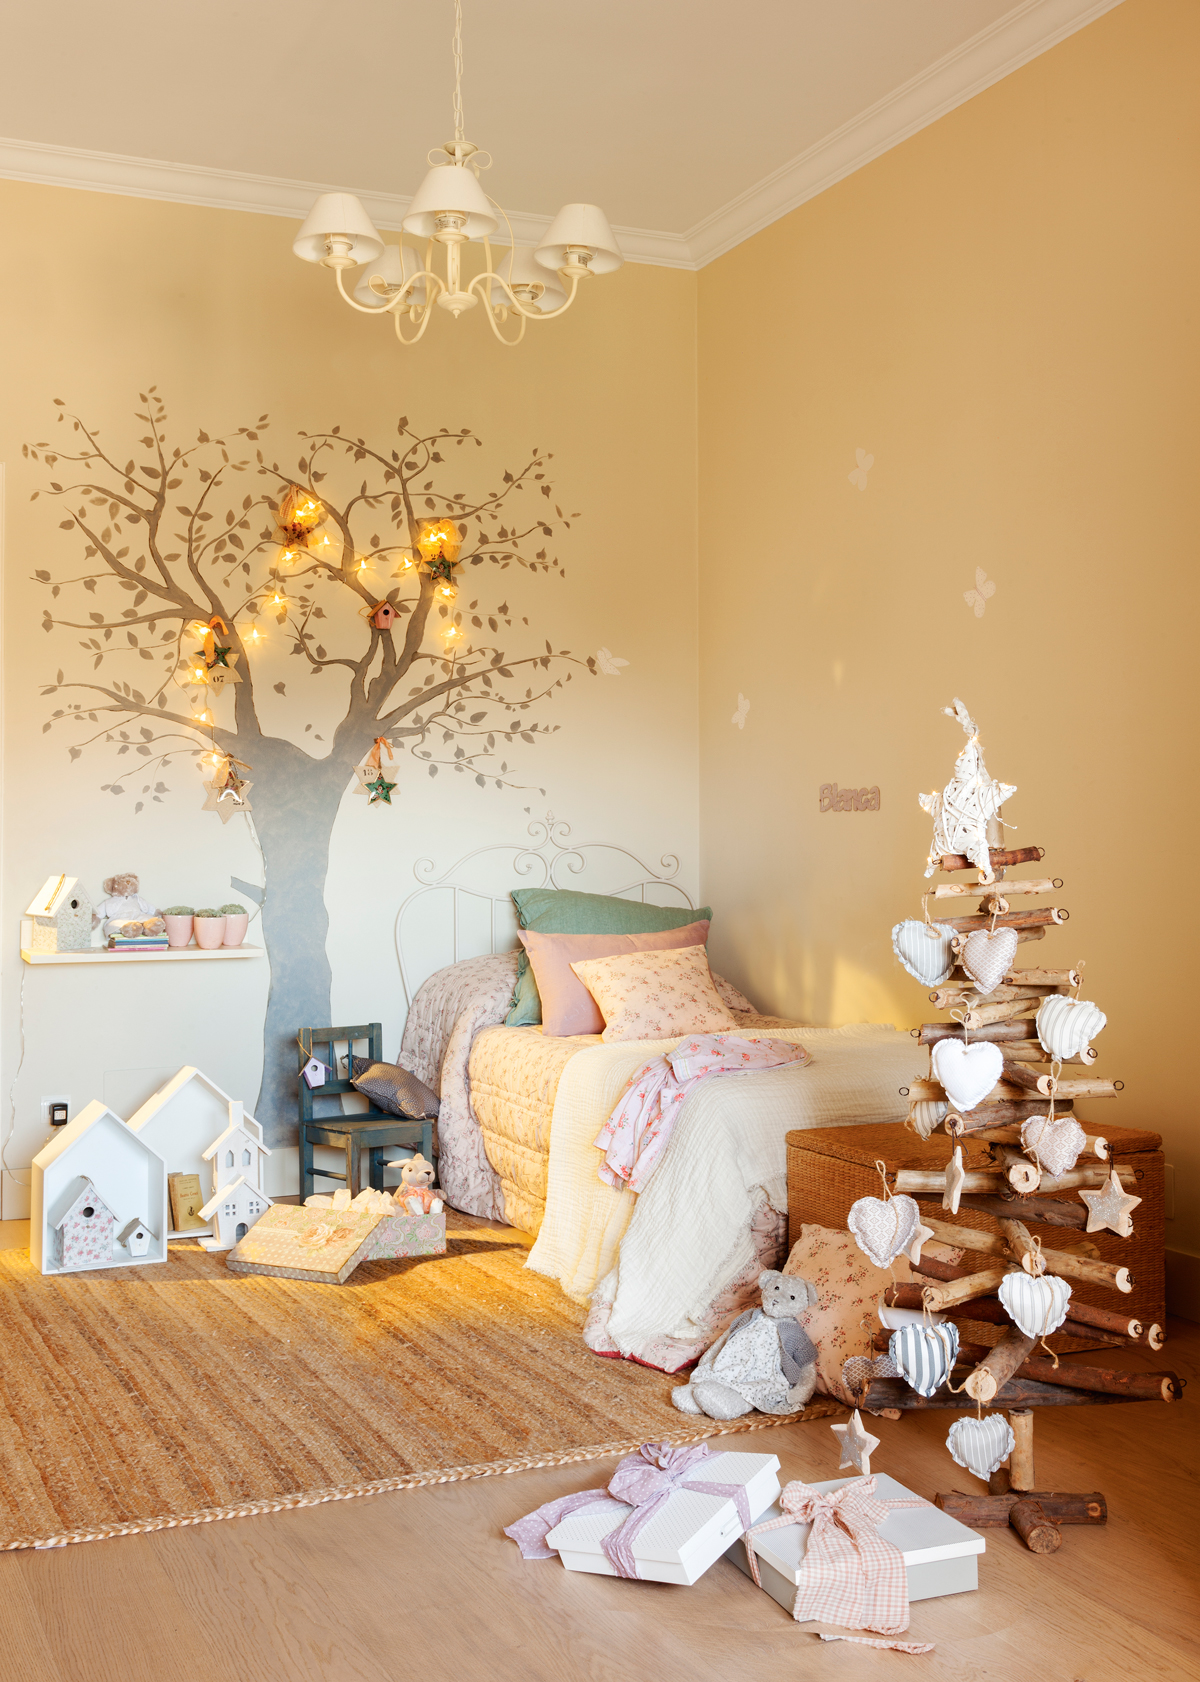 Adornos de Navidad para decorar la habitación infantil